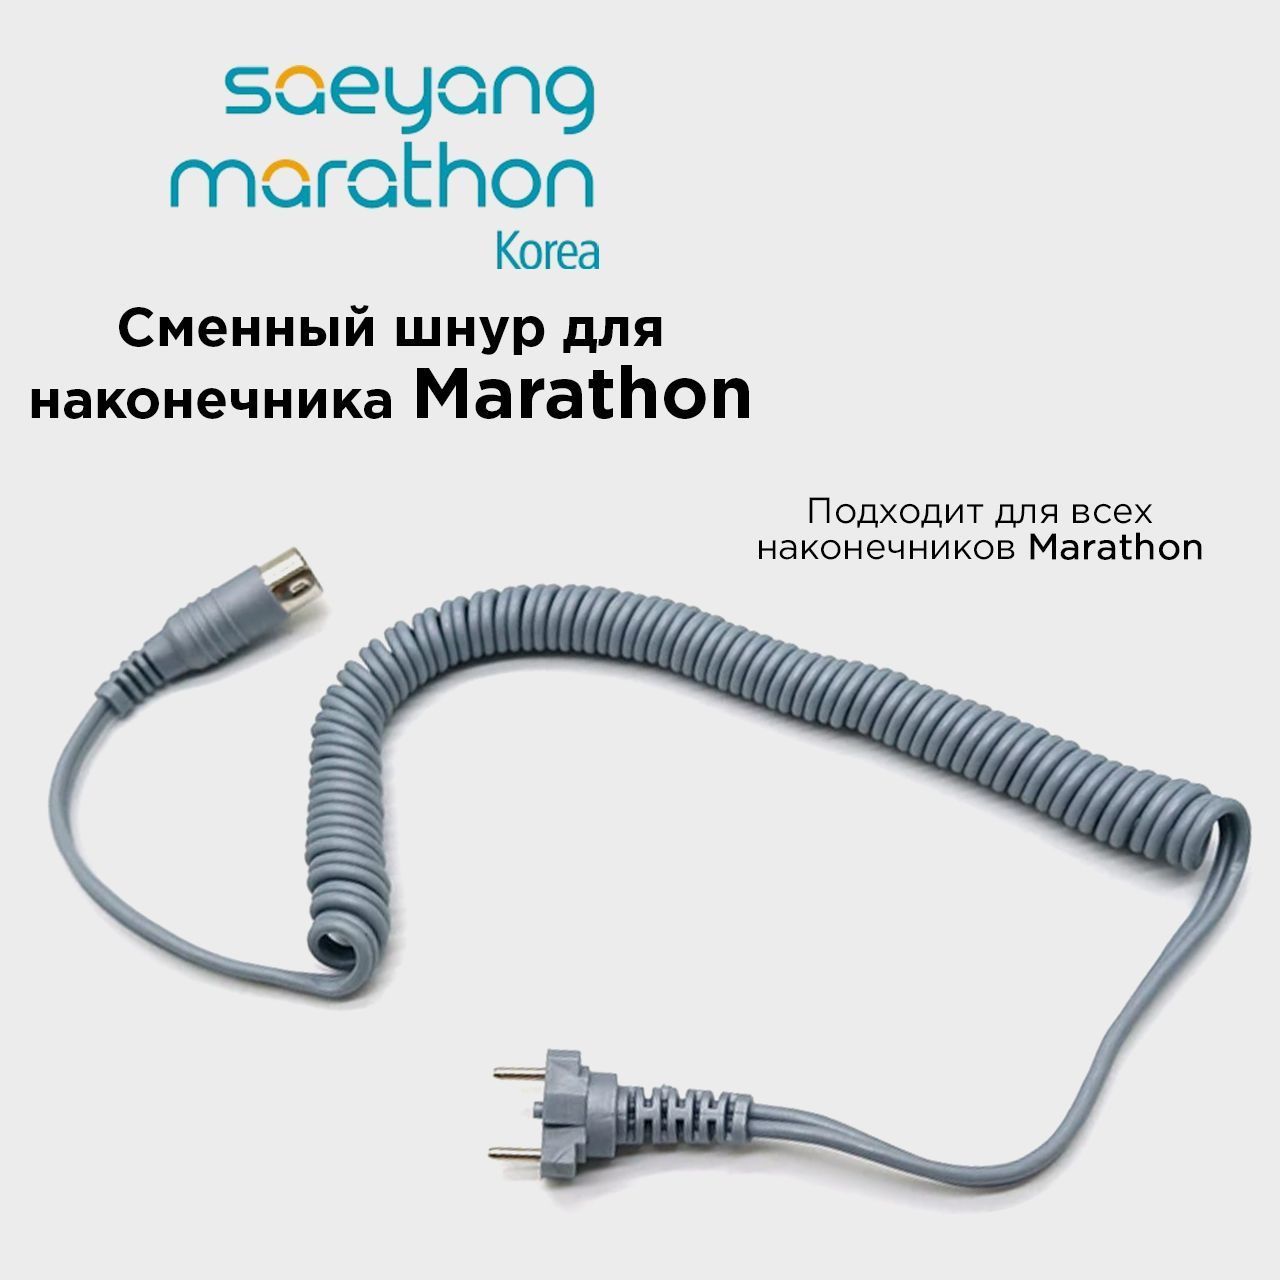 Провод для микромотора Marathon шнур для ручки наконечника Маратон Серый